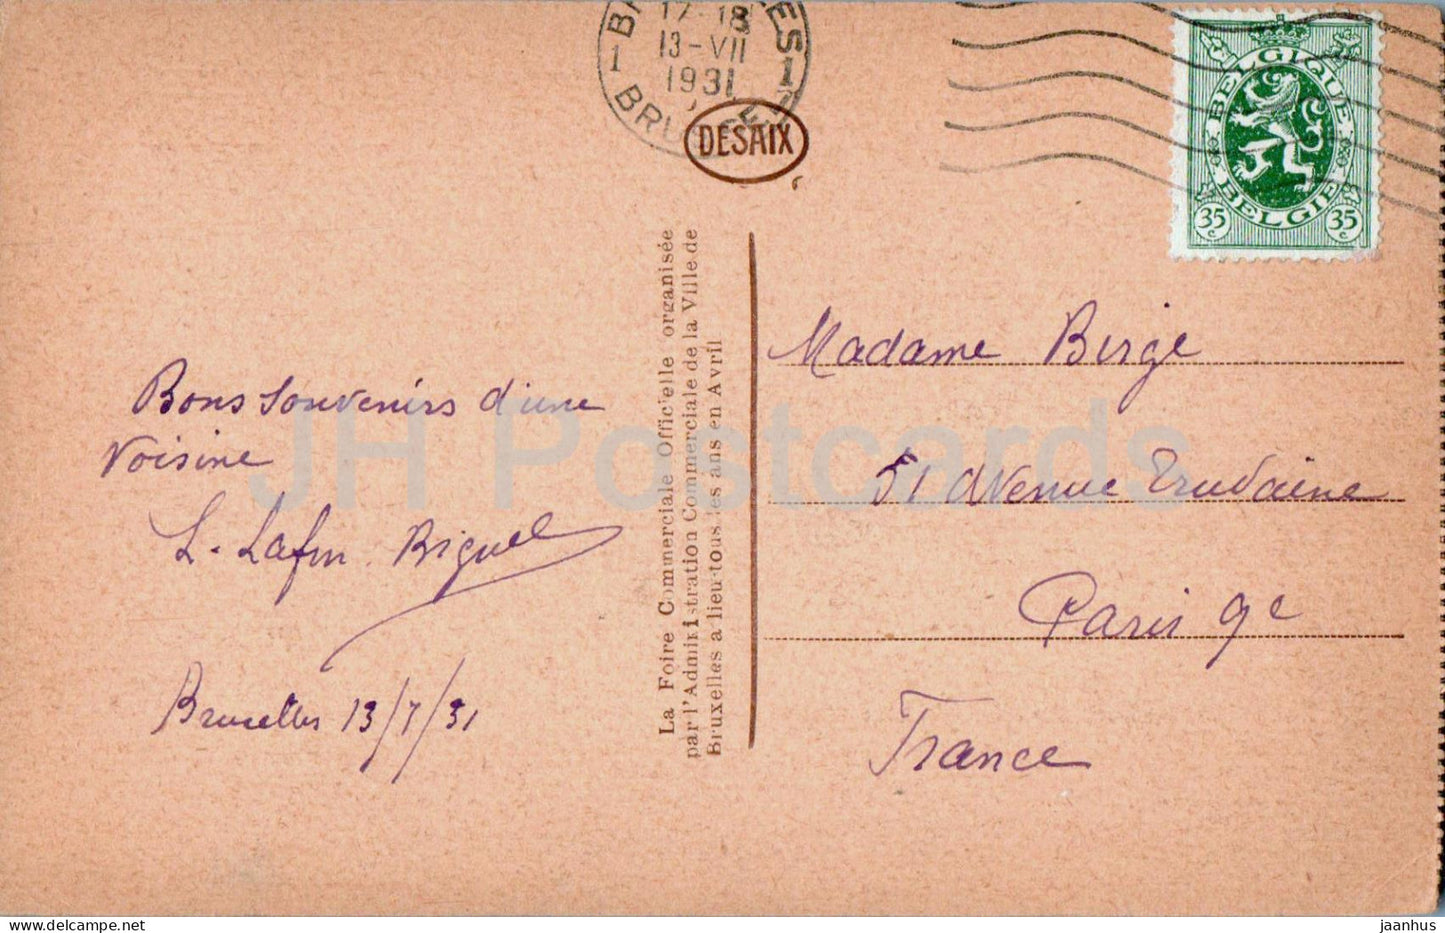 Bruxelles - Brüssel - Grand Place - Maison des boulangers - alte Postkarte - 4 - 1931 - Belgien - gebraucht 